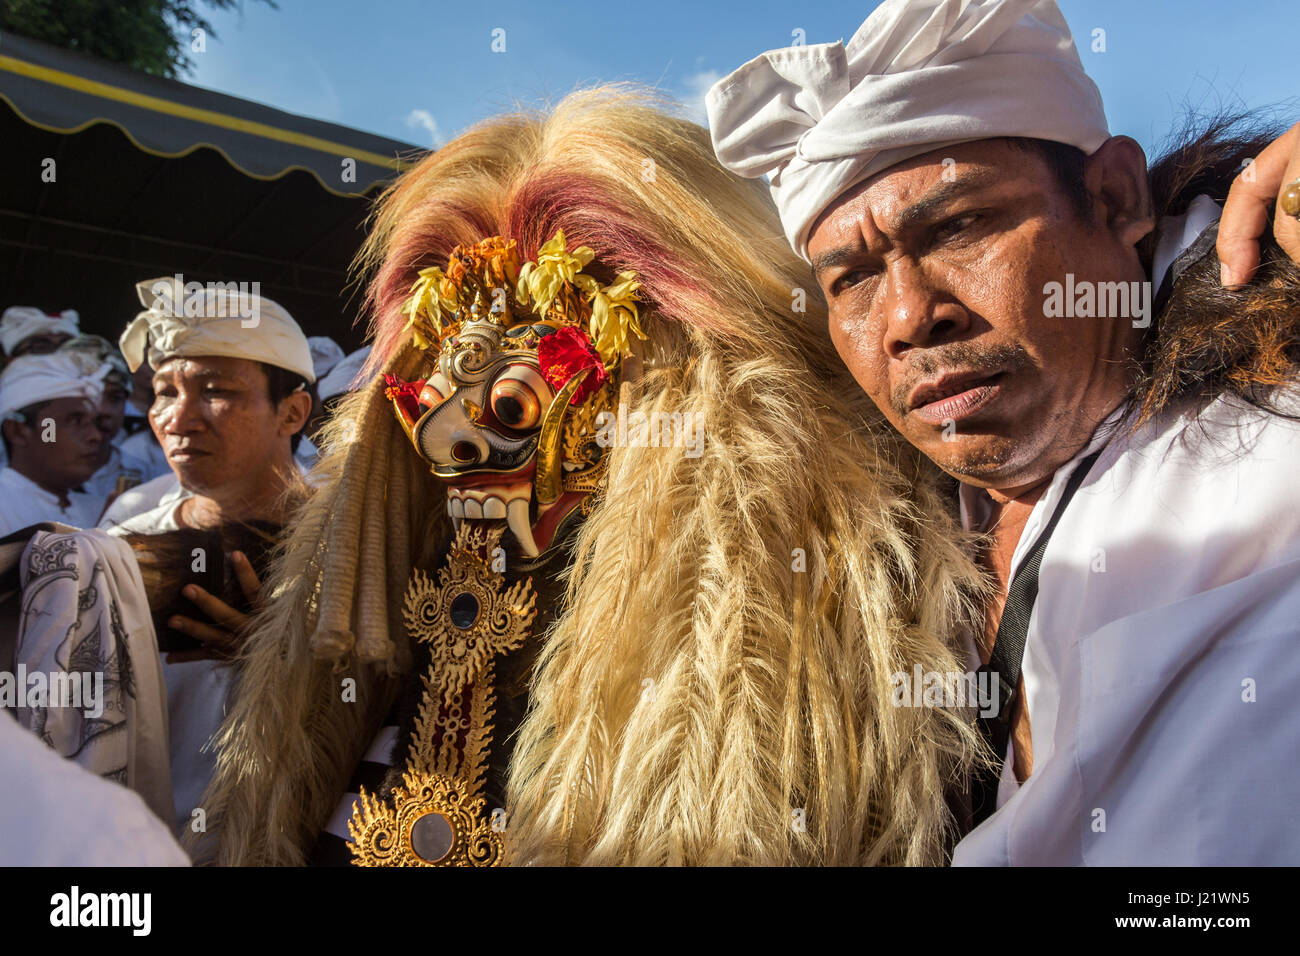 Kesiman, Denpasar, Bali, Indonesien. 23. April 2017. Balinesische Mann hilft Rangda die Dämon-Königin der Hexen während der Trance bei Messer-Ritual der Sakral an der Pengerebongan-Zeremonie selbst. Dieses Ritual findet alle 210 Tage auf dem hinduistischen Balinesen Saka-Kalender die Gebete und Opfergaben, eine Parade von mythologischen Figuren, Männer und Frauen in Trance mit einigen Männern, die versuchen, ihre Haut mit einem traditionellen Keris (Messer) durchbohren mit sich bringt, zum Glück niemand wird verletzt bei dieser unglaublichen balinesische Zeremonie in Pura Petilan Tempel, Denpasar, Indonesien. Bildnachweis: Antony Ratcliffe/Alamy Li Stockfoto